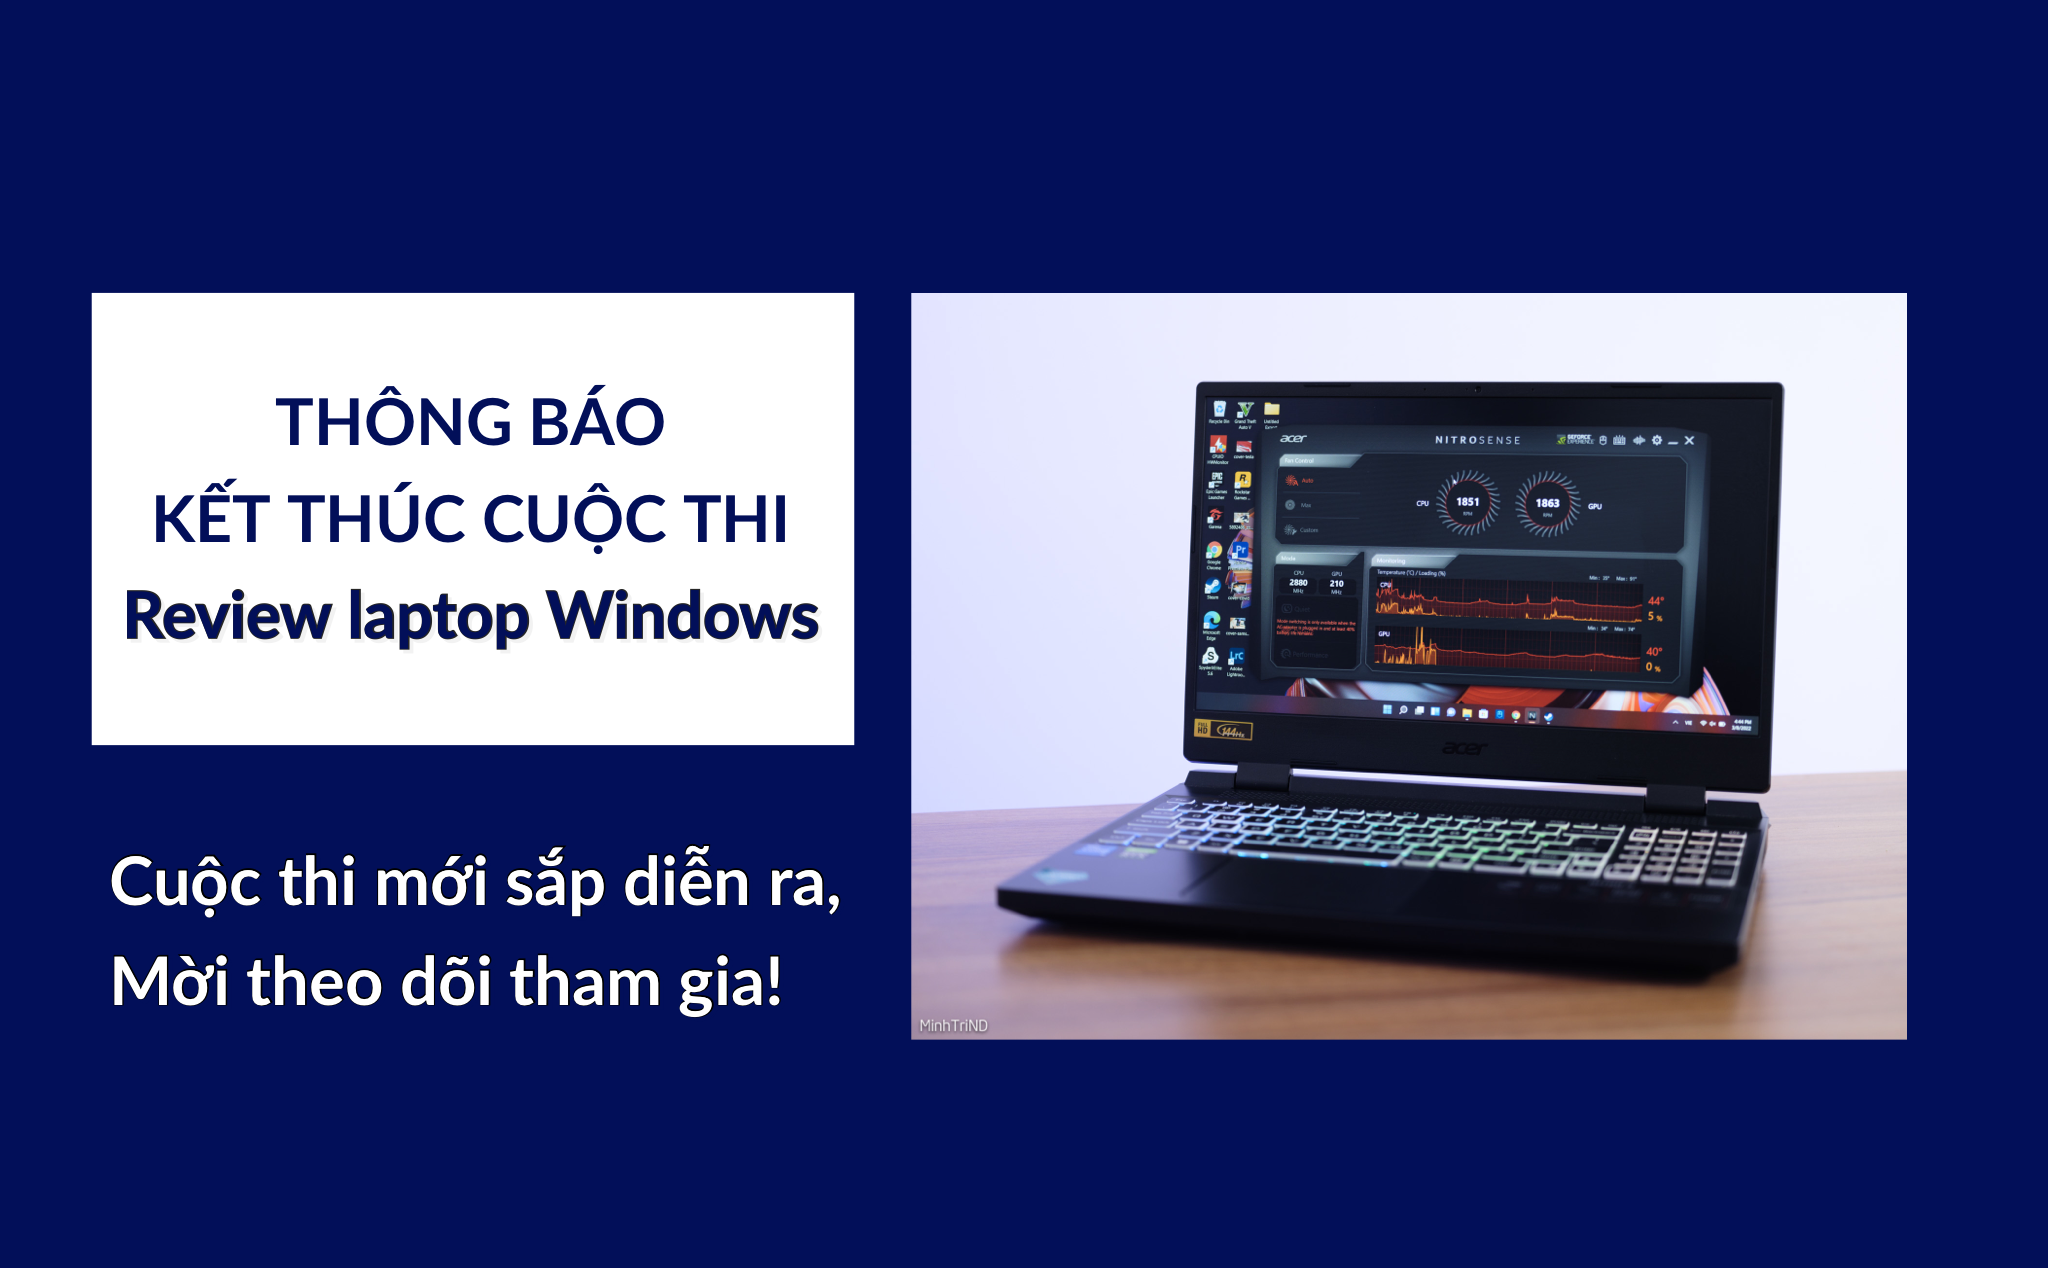 Thông báo kết thúc cuộc thi review laptop Windows, mời theo dõi cuộc thi mới sắp diễn ra